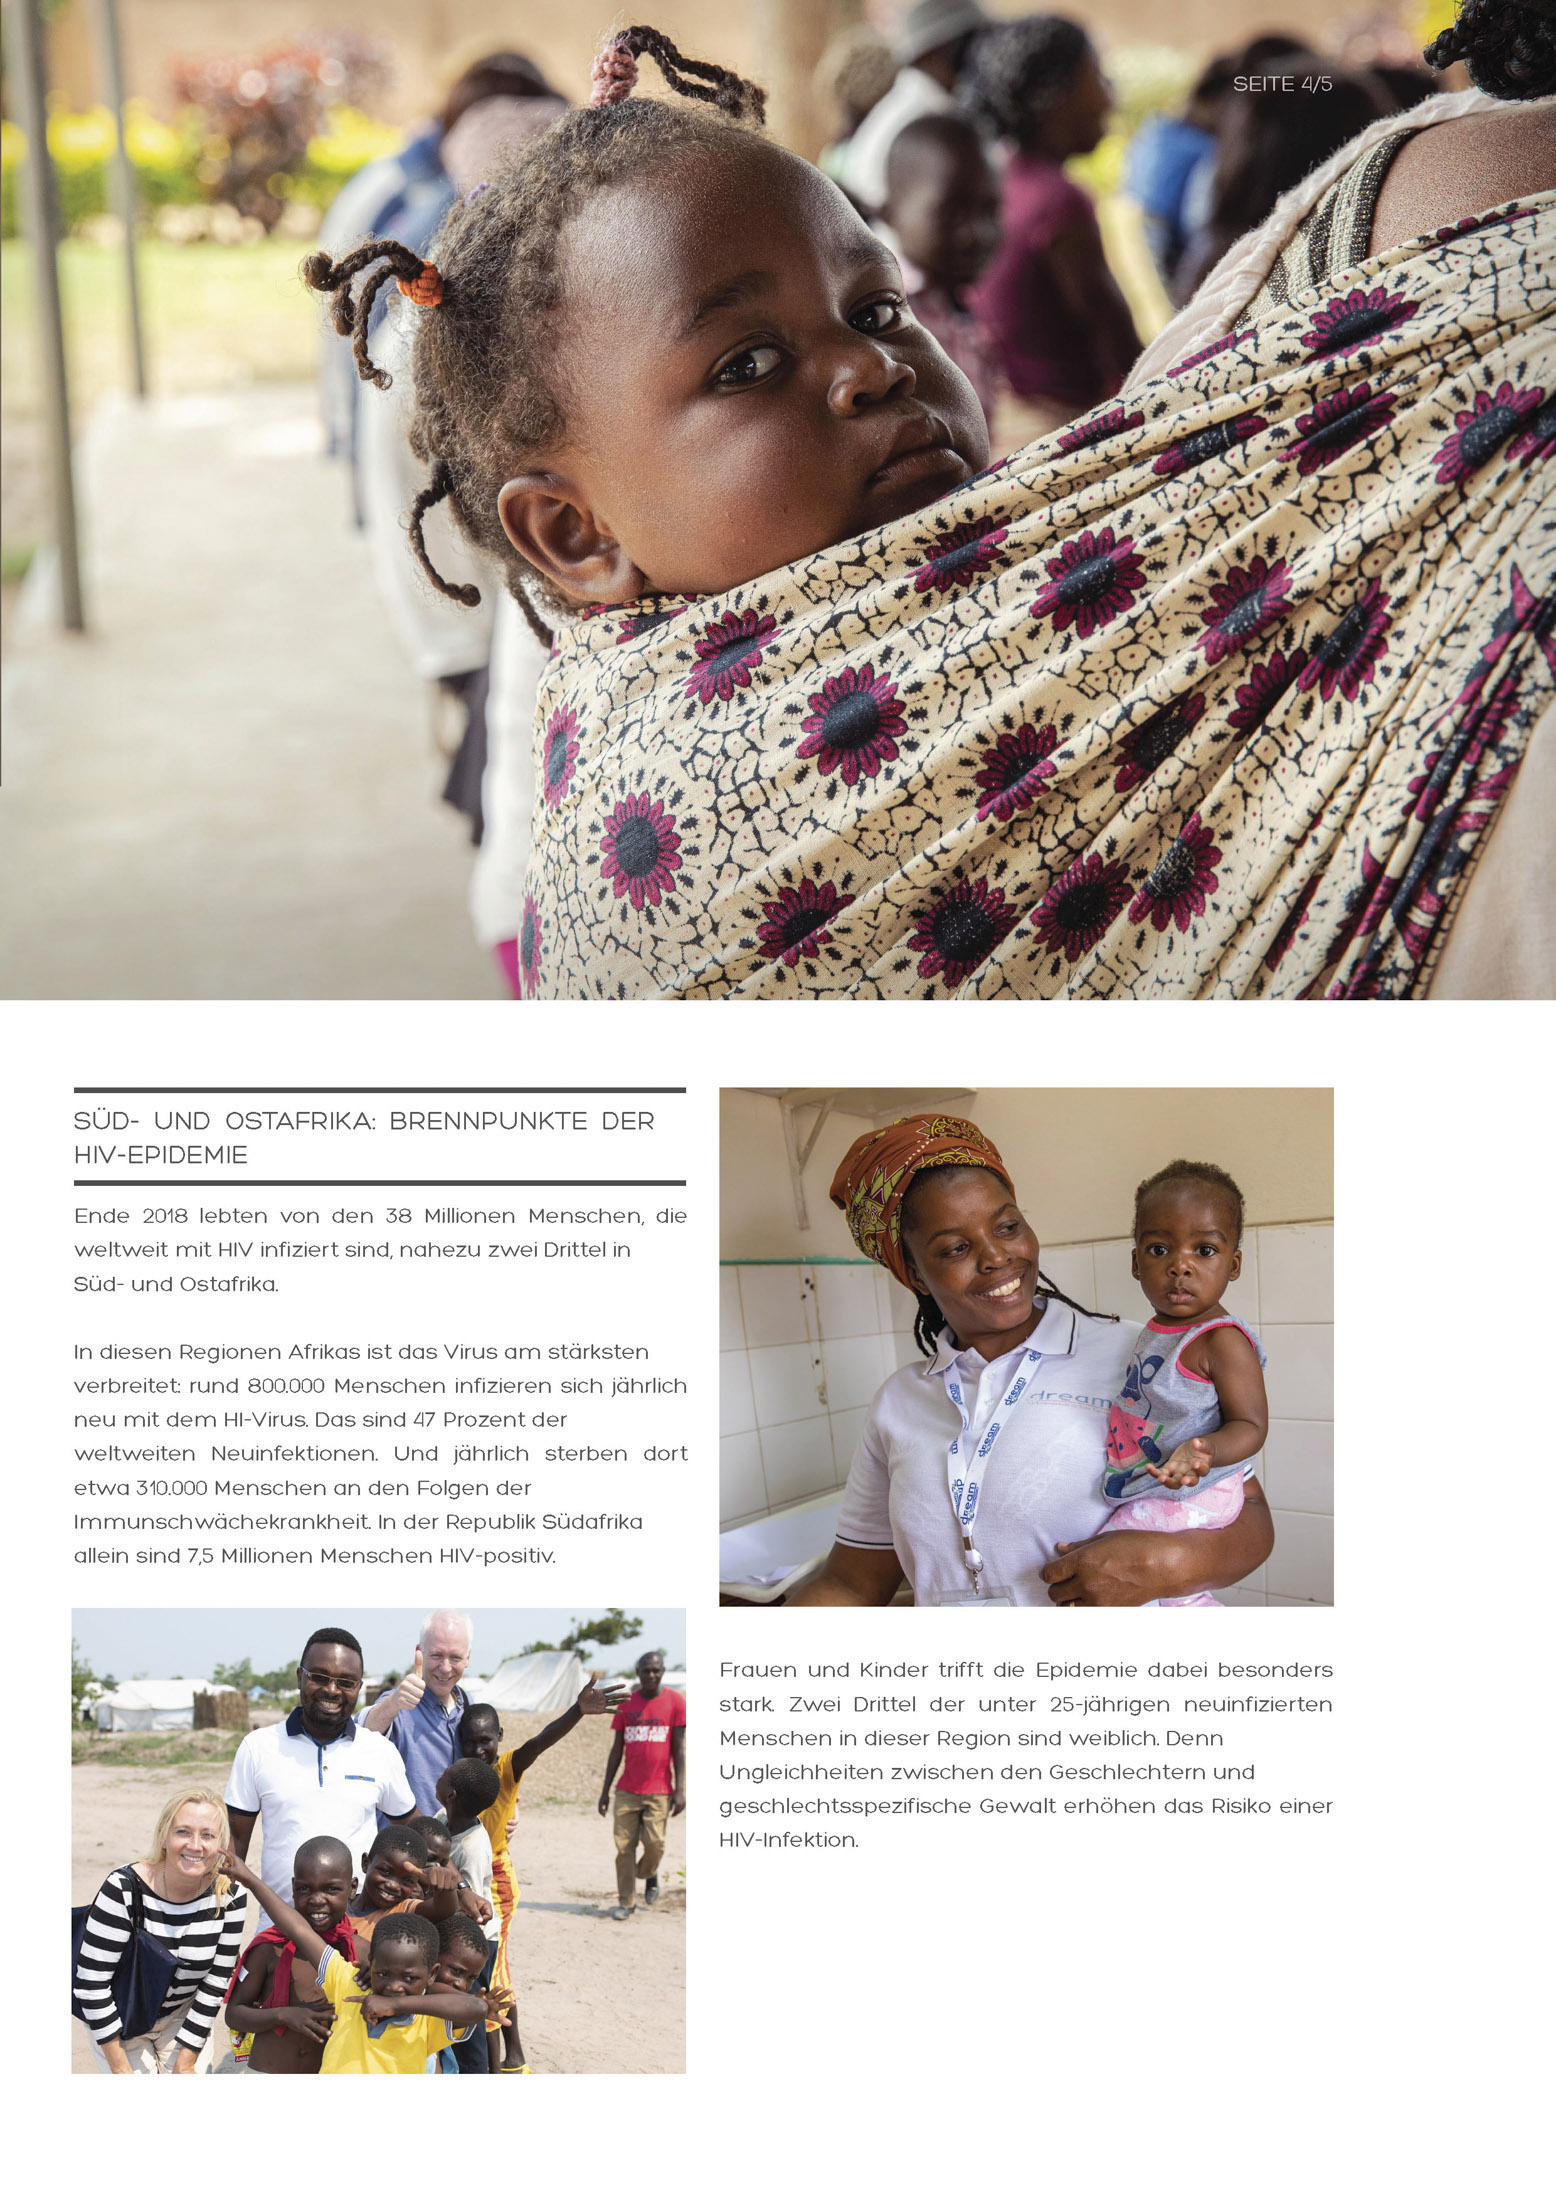 Eine Collage aus drei Bildern: Ein kleines afrikanisches Kind wird von einer Frau in den Armen gehalten und blickt zurück, eine Frau steht neben einem Bereich, in dem Essen serviert wird, und eine Krankenschwester hält in einem Krankenhaus ein Baby im Arm. © Fotografie Tomas Rodriguez